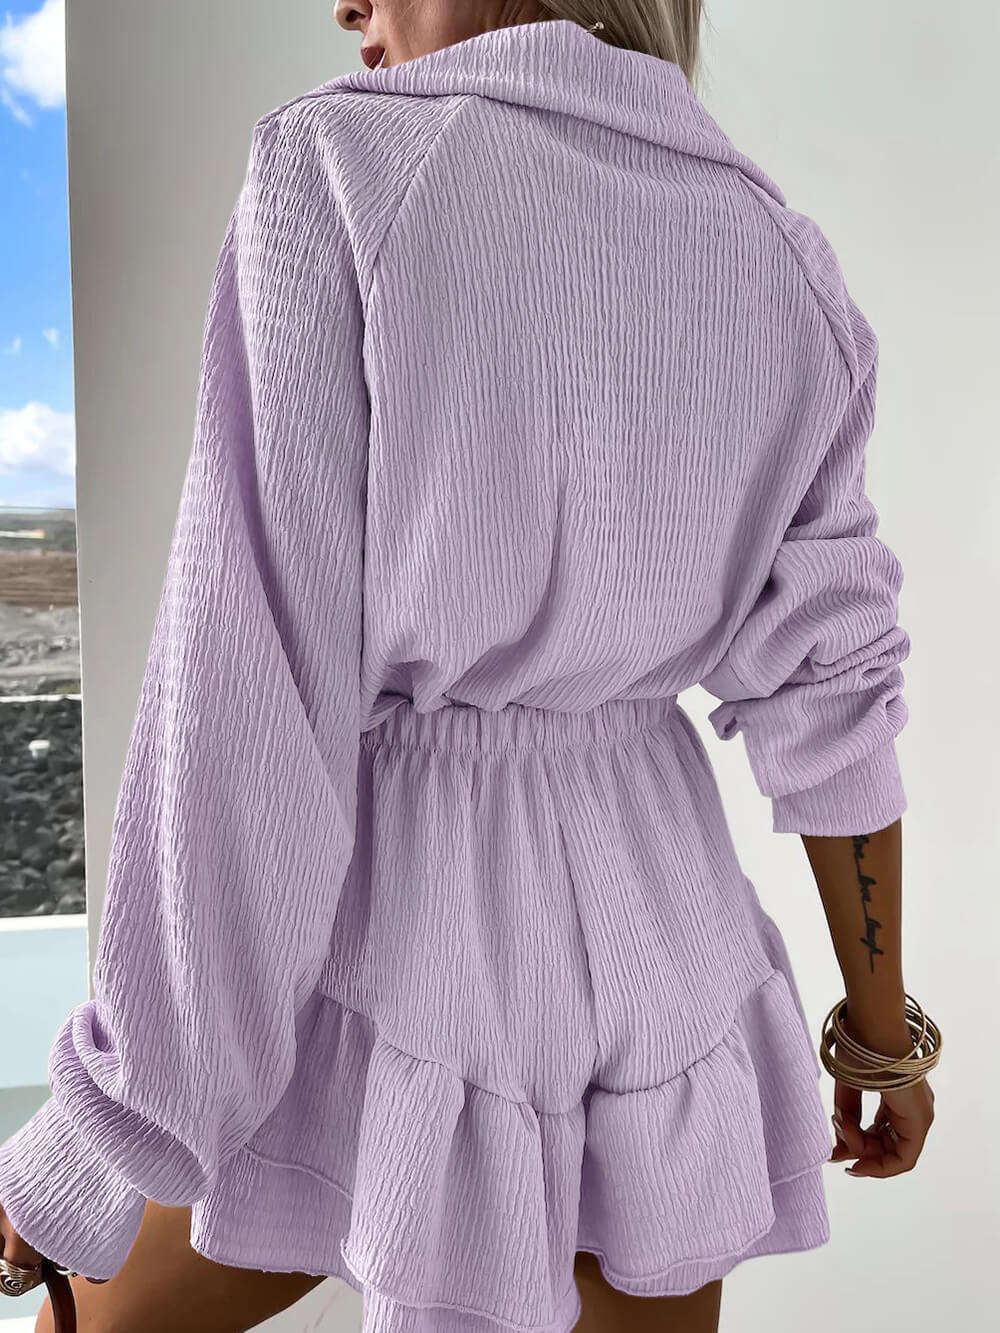 Γυναικείο πουκάμισο με λαιμόκοψη σε σχήμα V και σετ δύο τεμαχίων με φλάντζα